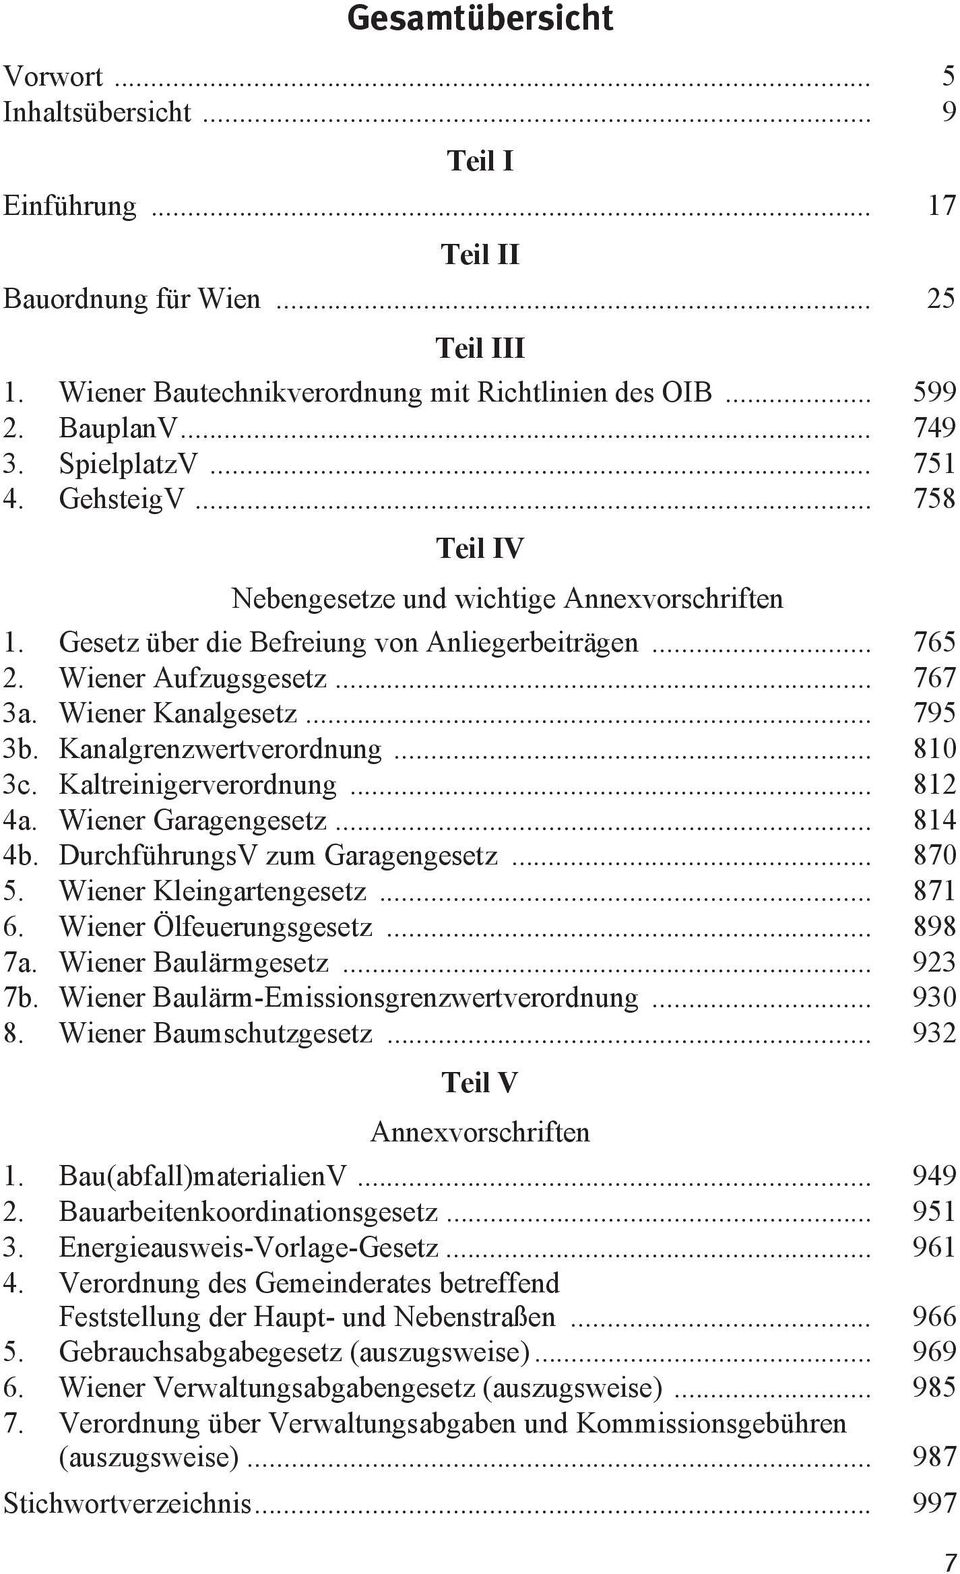 Wiener Kanalgesetz... 795 3b. Kanalgrenzwertverordnung... 810 3c. Kaltreinigerverordnung... 812 4a. Wiener Garagengesetz... 814 4b. DurchführungsV zum Garagengesetz... 870 5. Wiener Kleingartengesetz.